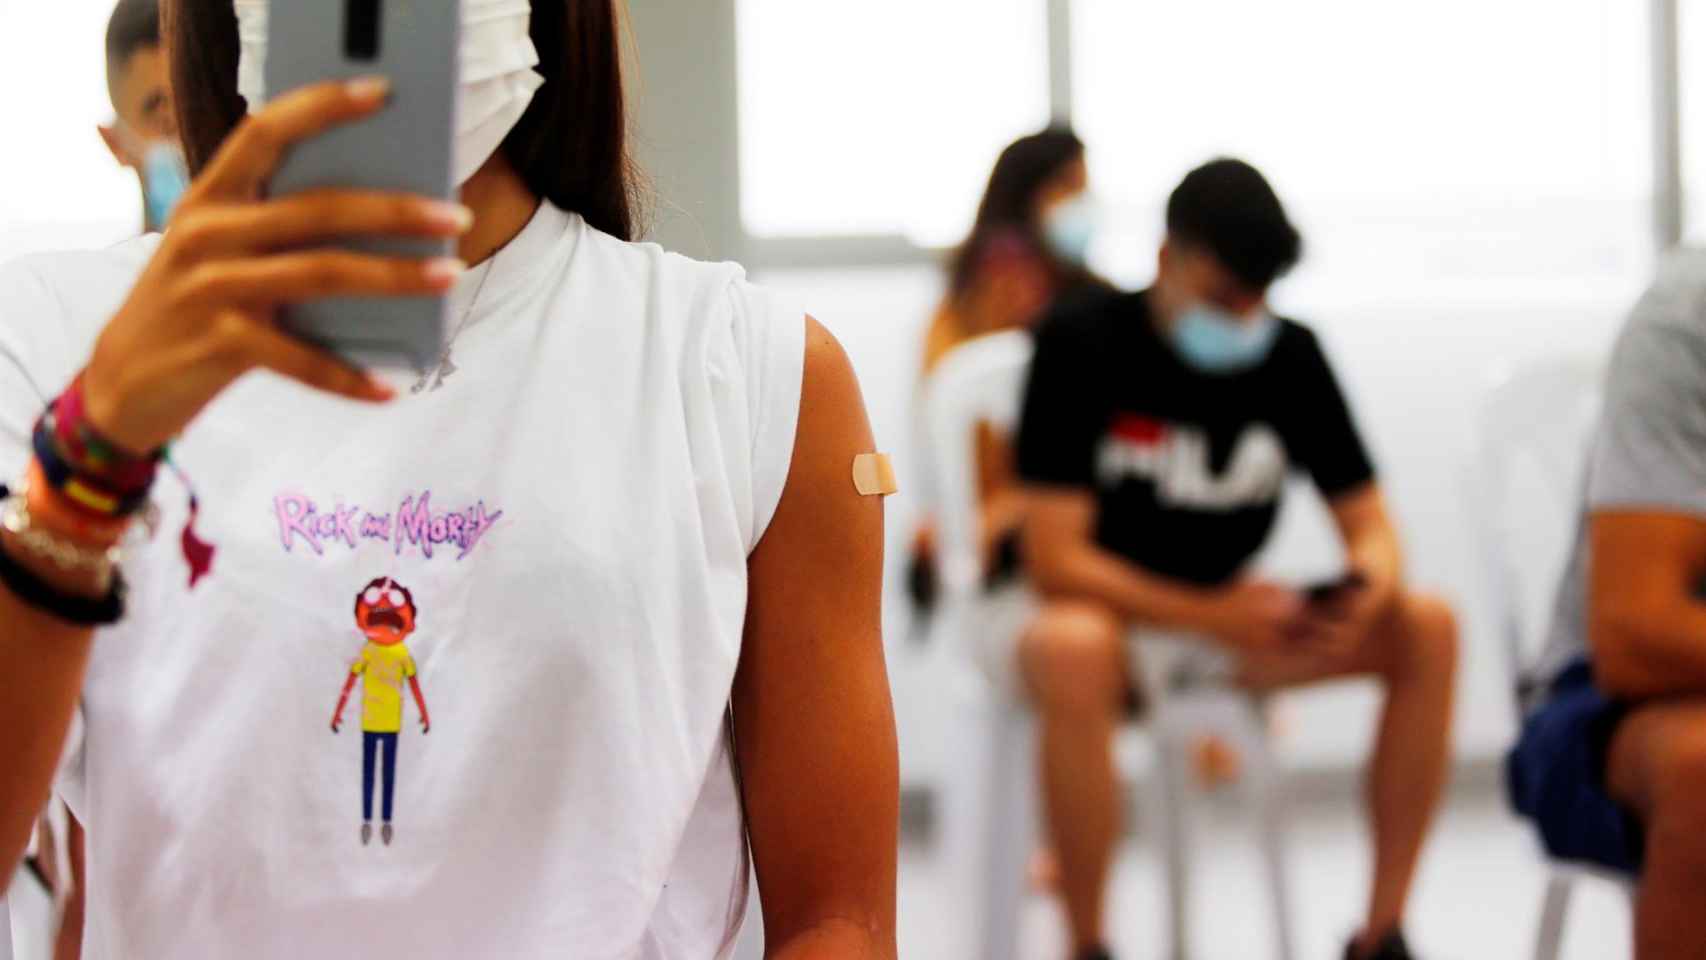 Calendario de vacunación en la Comunidad Valenciana  del 16 al 22 de agosto: turno de los niños de 12 y 13 años.